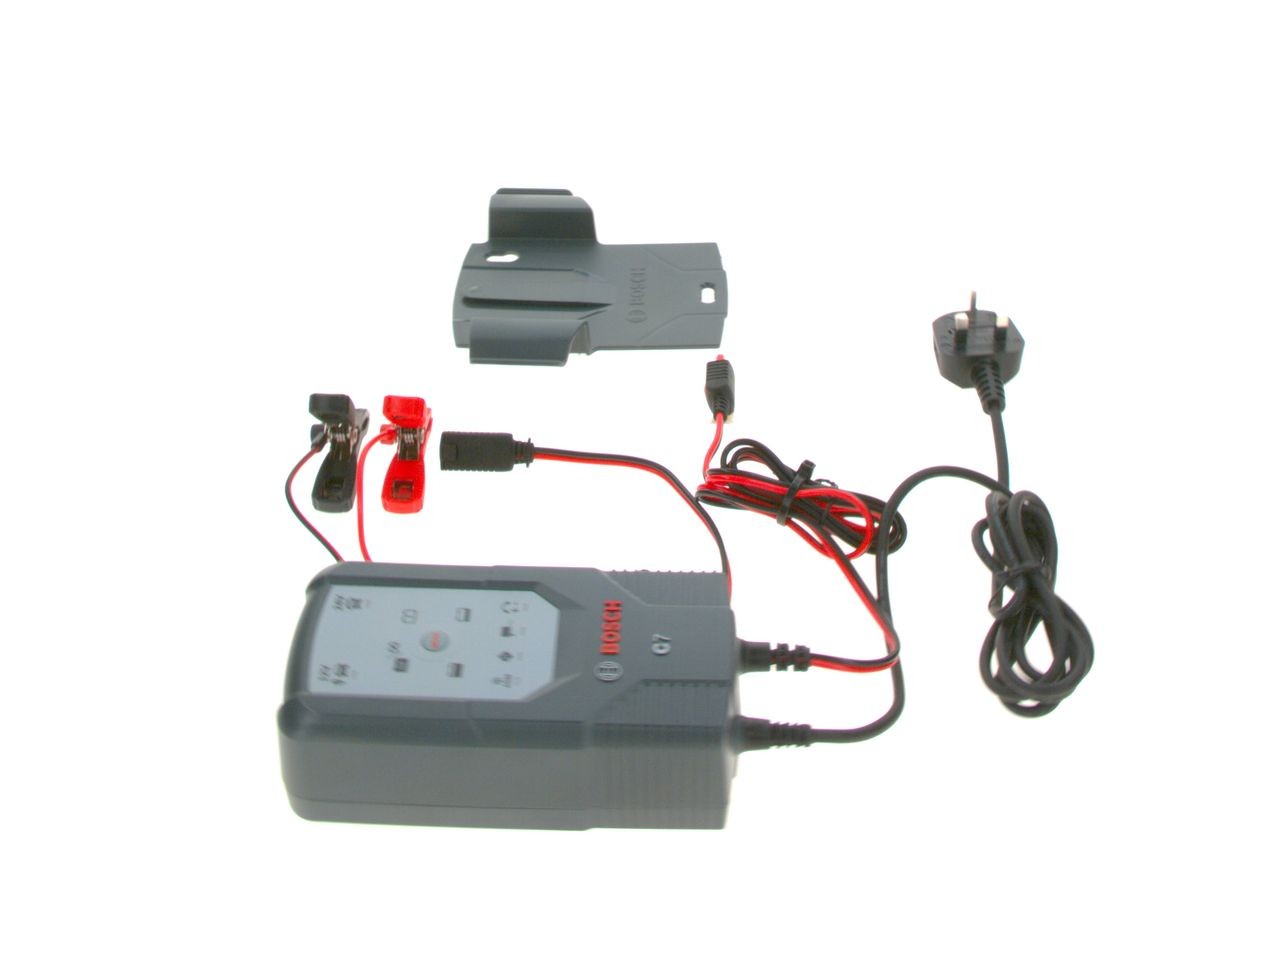 Chargeur de batterie Bosch C7, rouge, intelligent et automatique